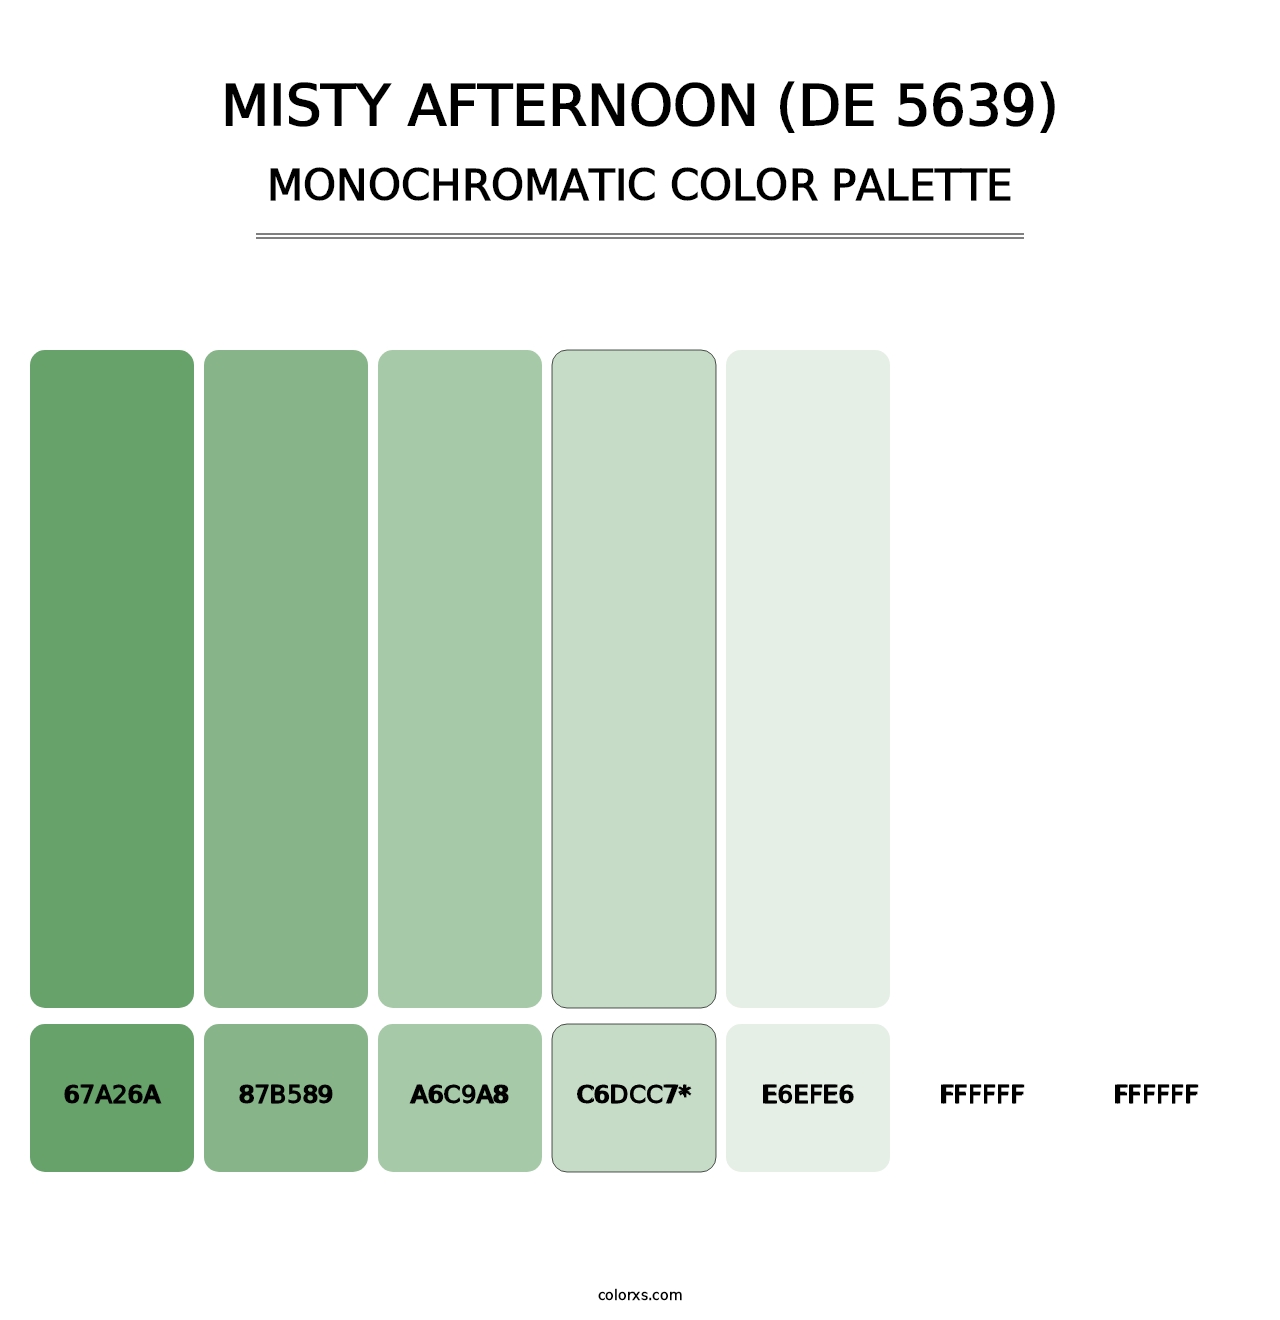 Misty Afternoon (DE 5639) - Monochromatic Color Palette